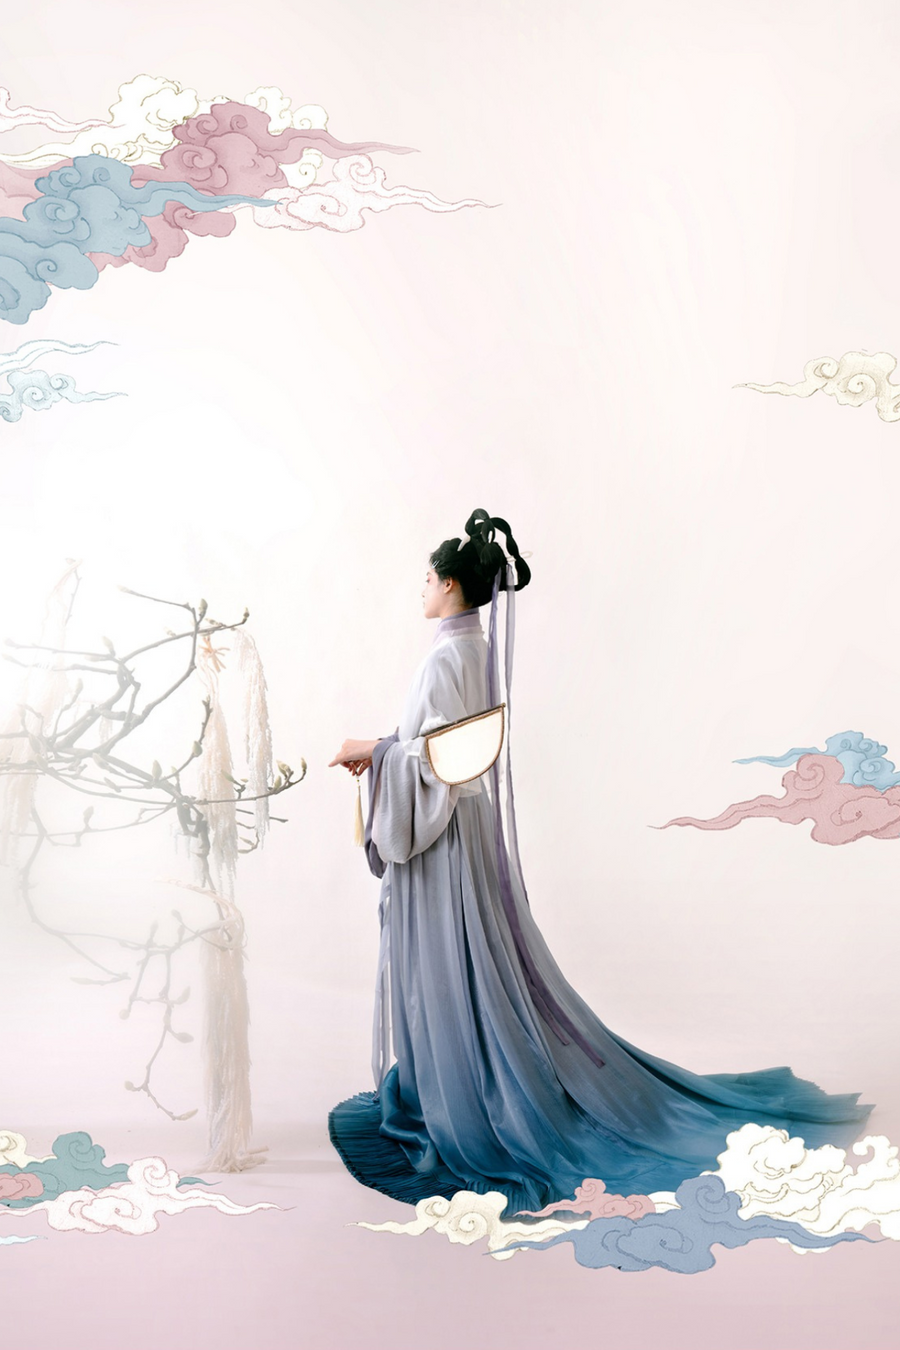 Luo Shen 洛神 River Goddess Wei Jin Zaju Chuishao Fu Swallow Tail & Flying Ribbon Recreation Set